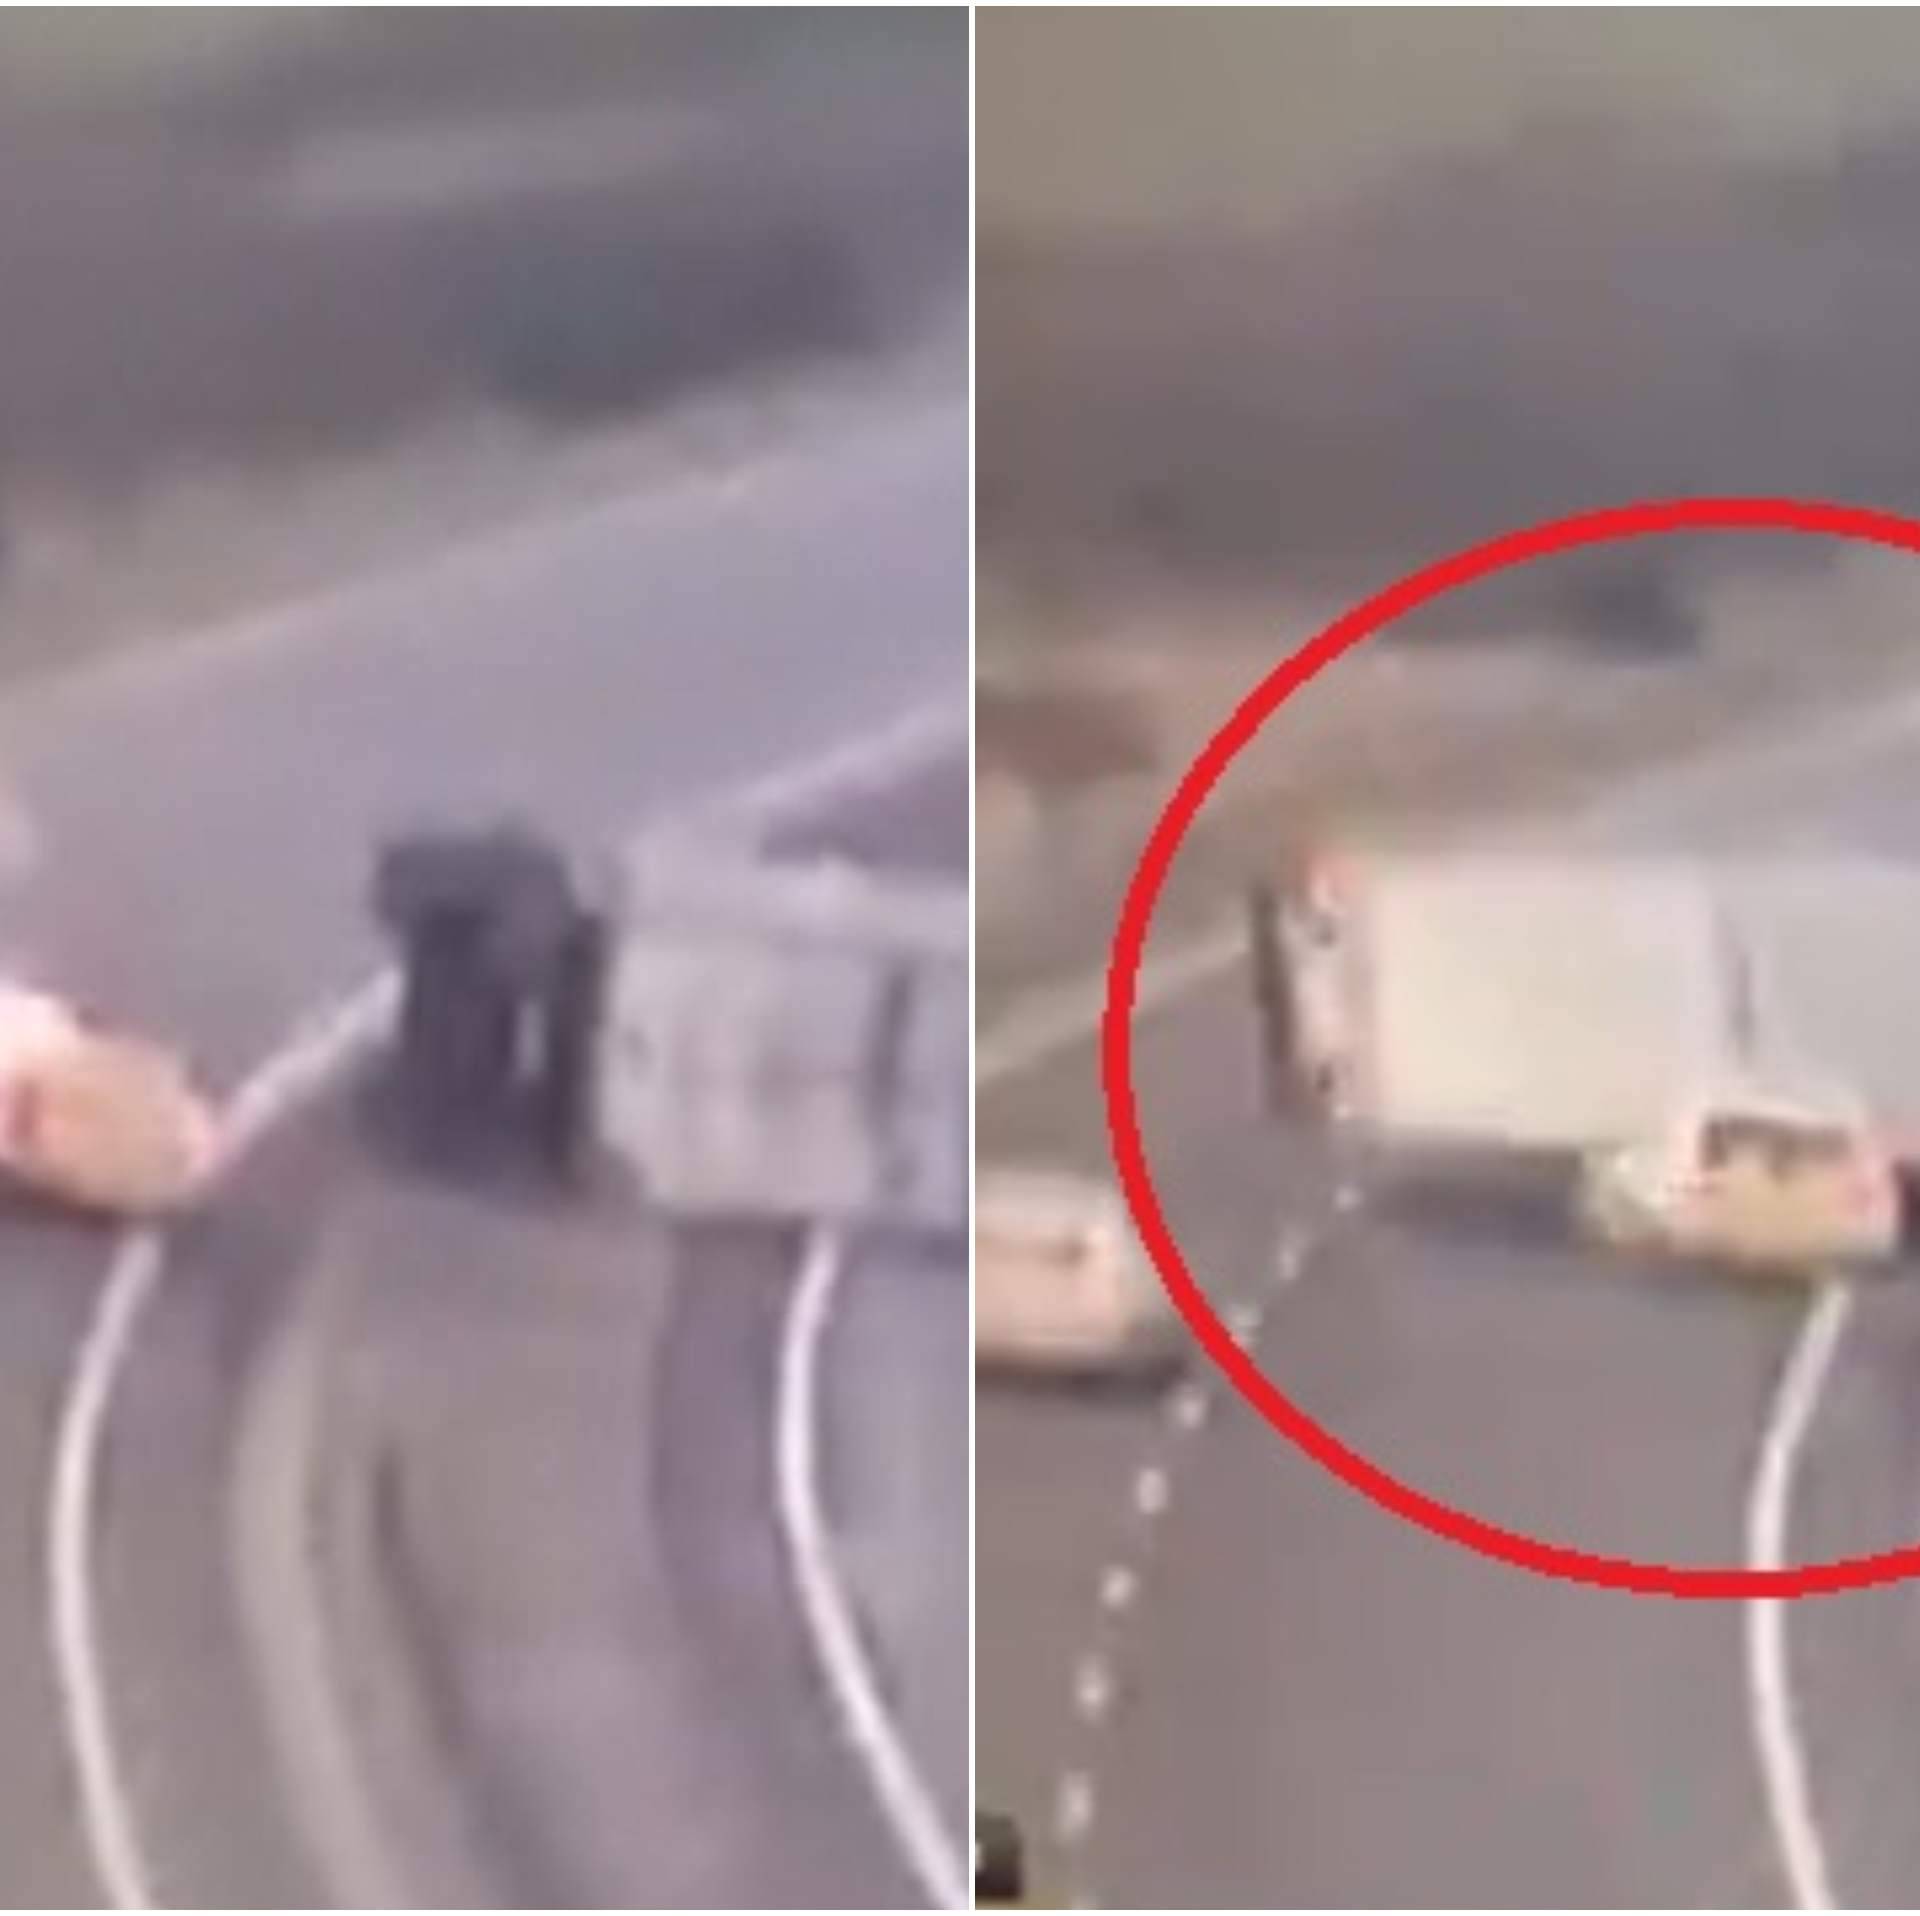 Jaki vjetar otpuhao kamion na policijski auto: Smrskao ga je!